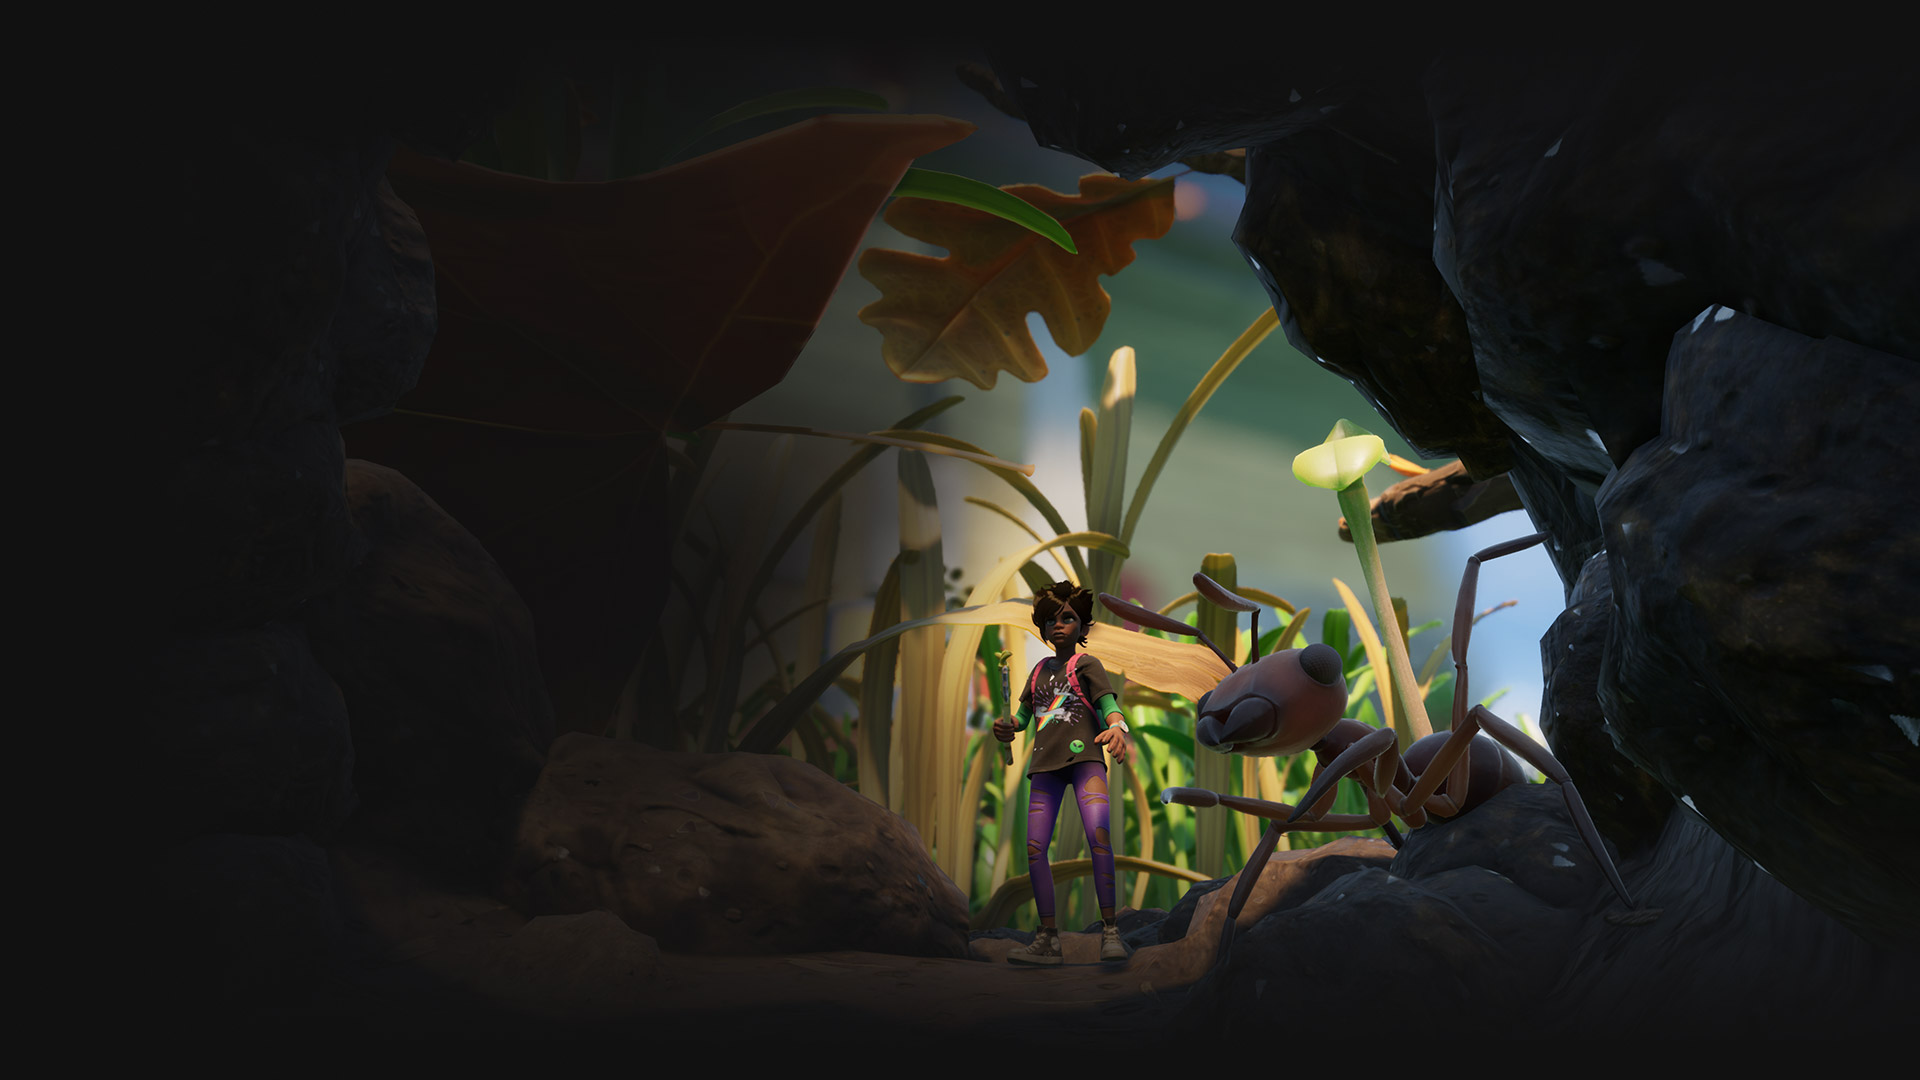 Postava mávajúca palicou bojuje s obrovským mravcom v scéne z hry Grounded